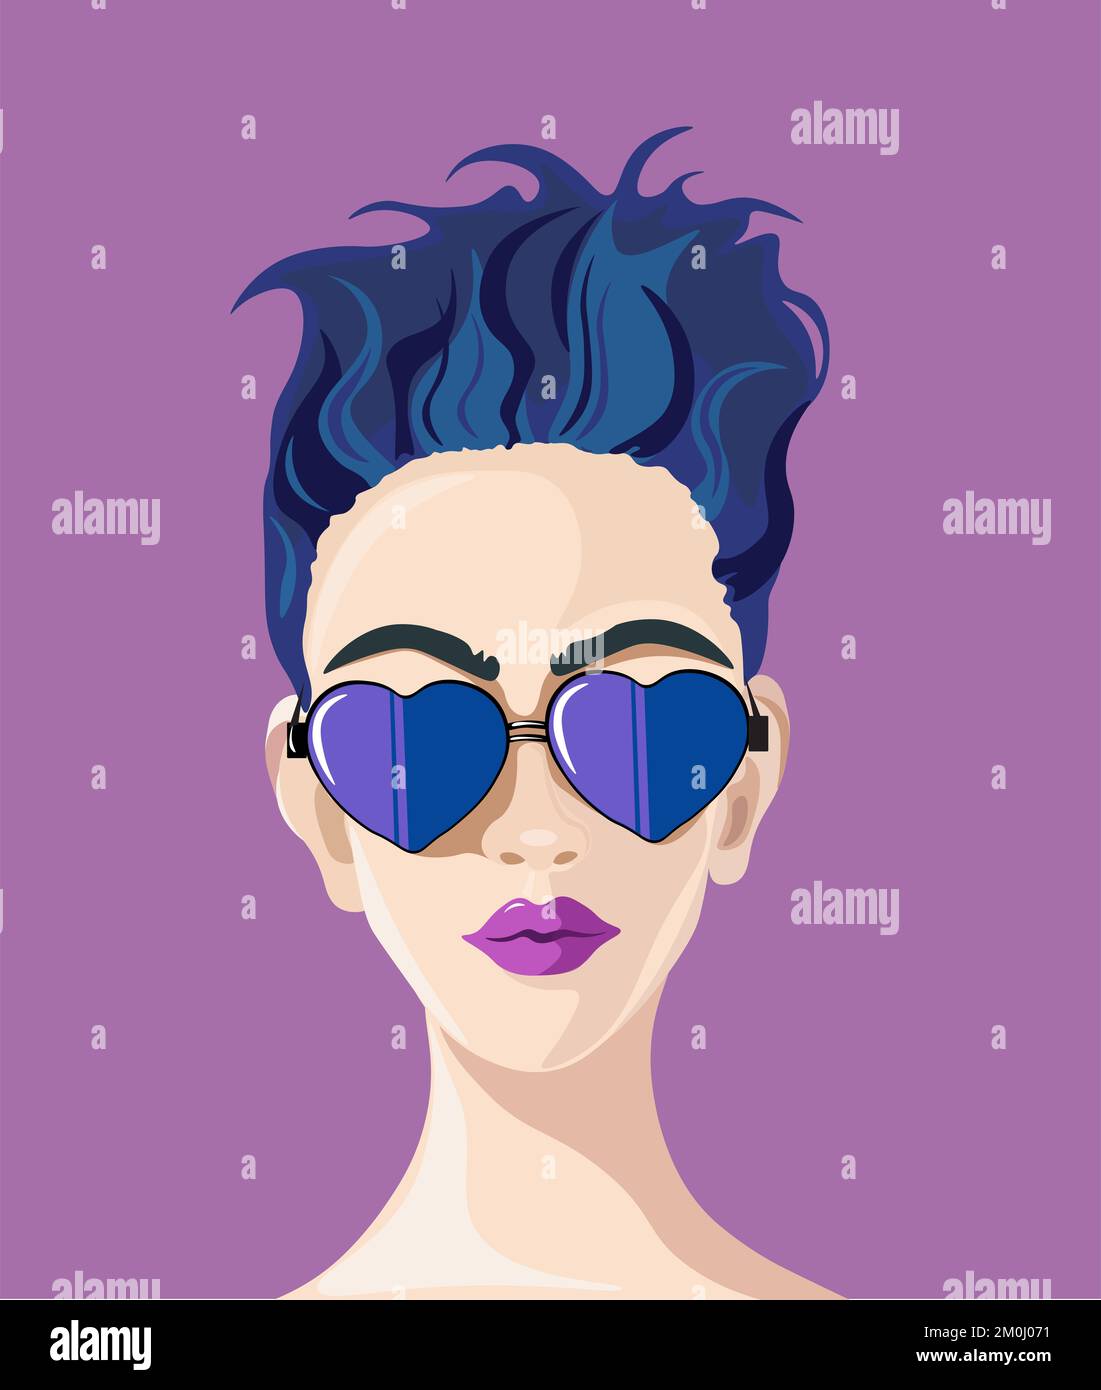 Una ilustración digital vertical de una mujer fresca con el pelo corto azul y los cristales formados púrpura del corazón Foto de stock